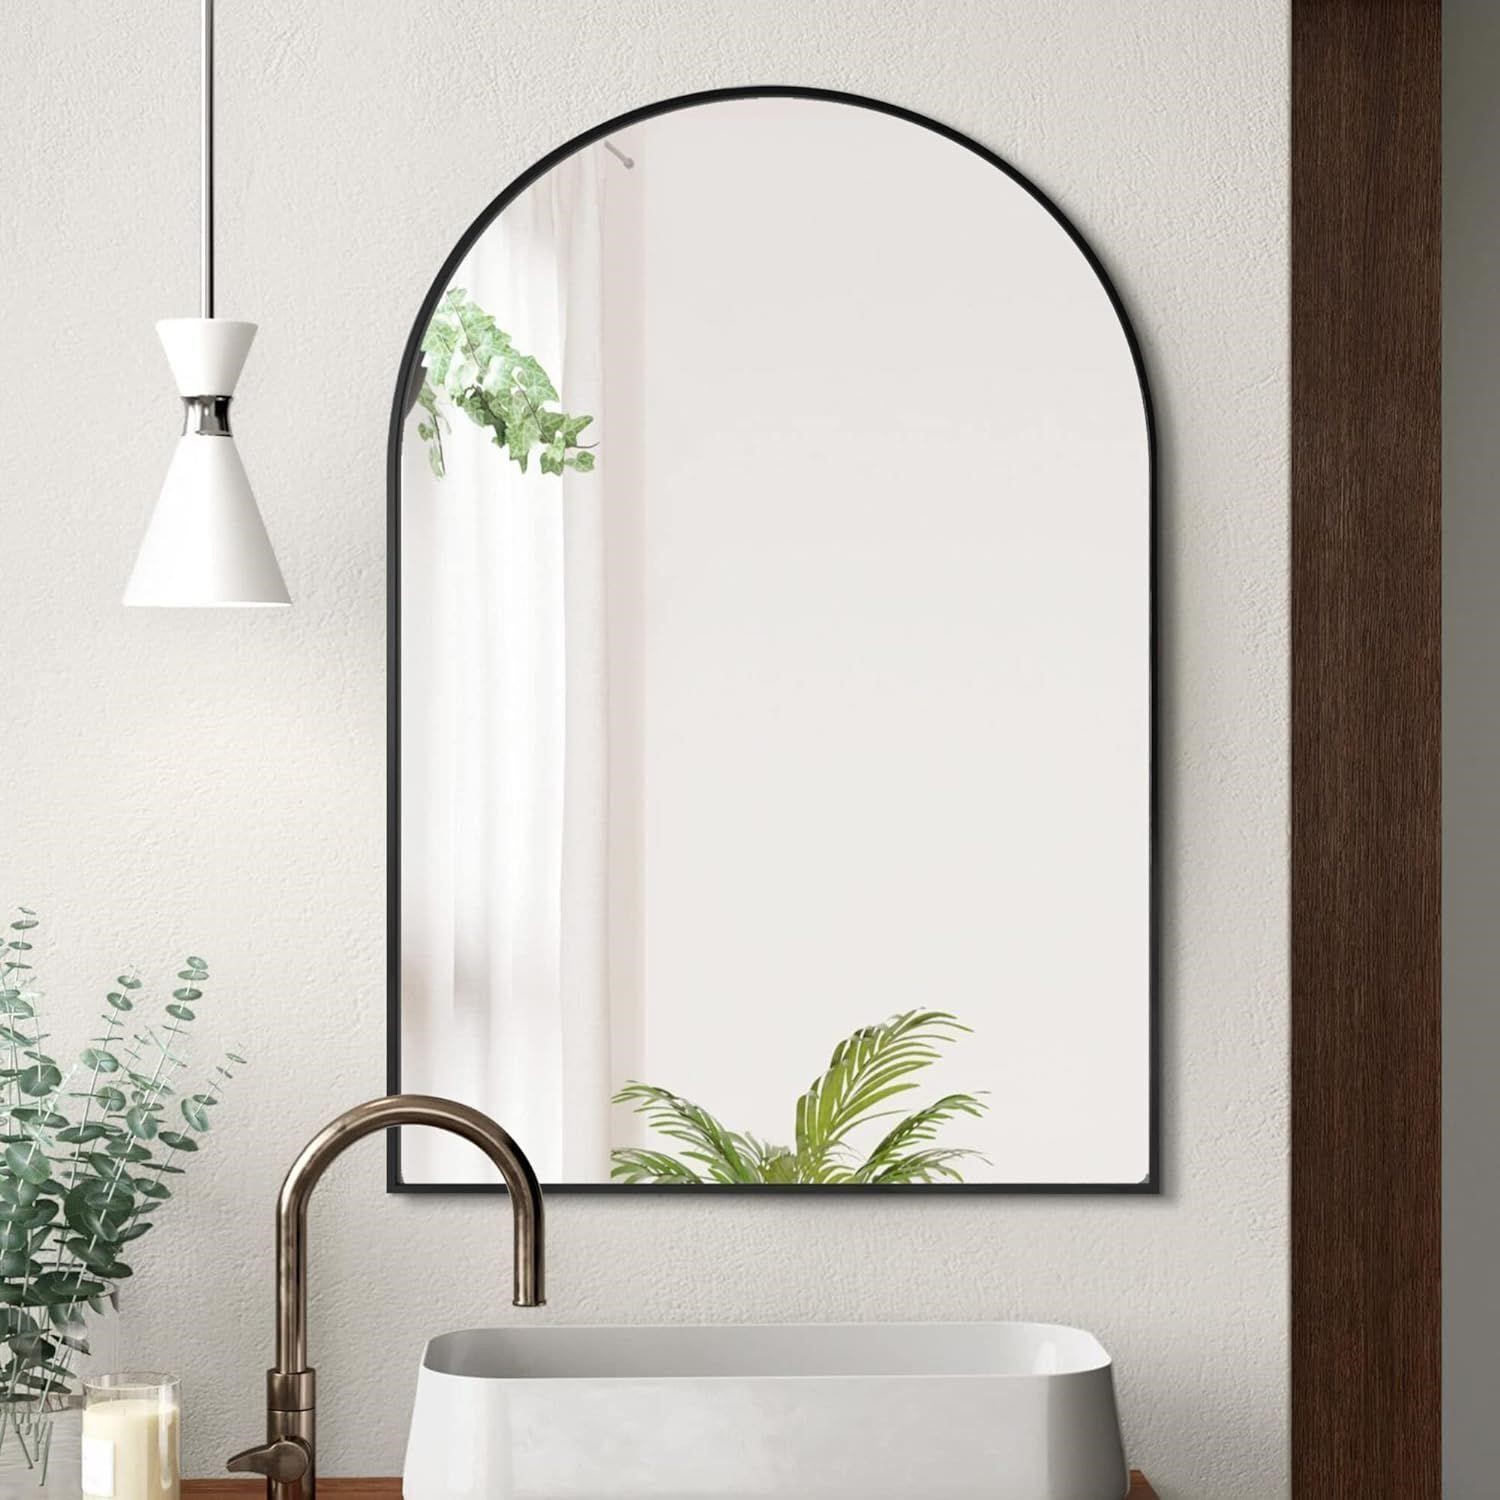 NEW $120 Arched Bathroom Mirror 24 x 36 Inch, Gold